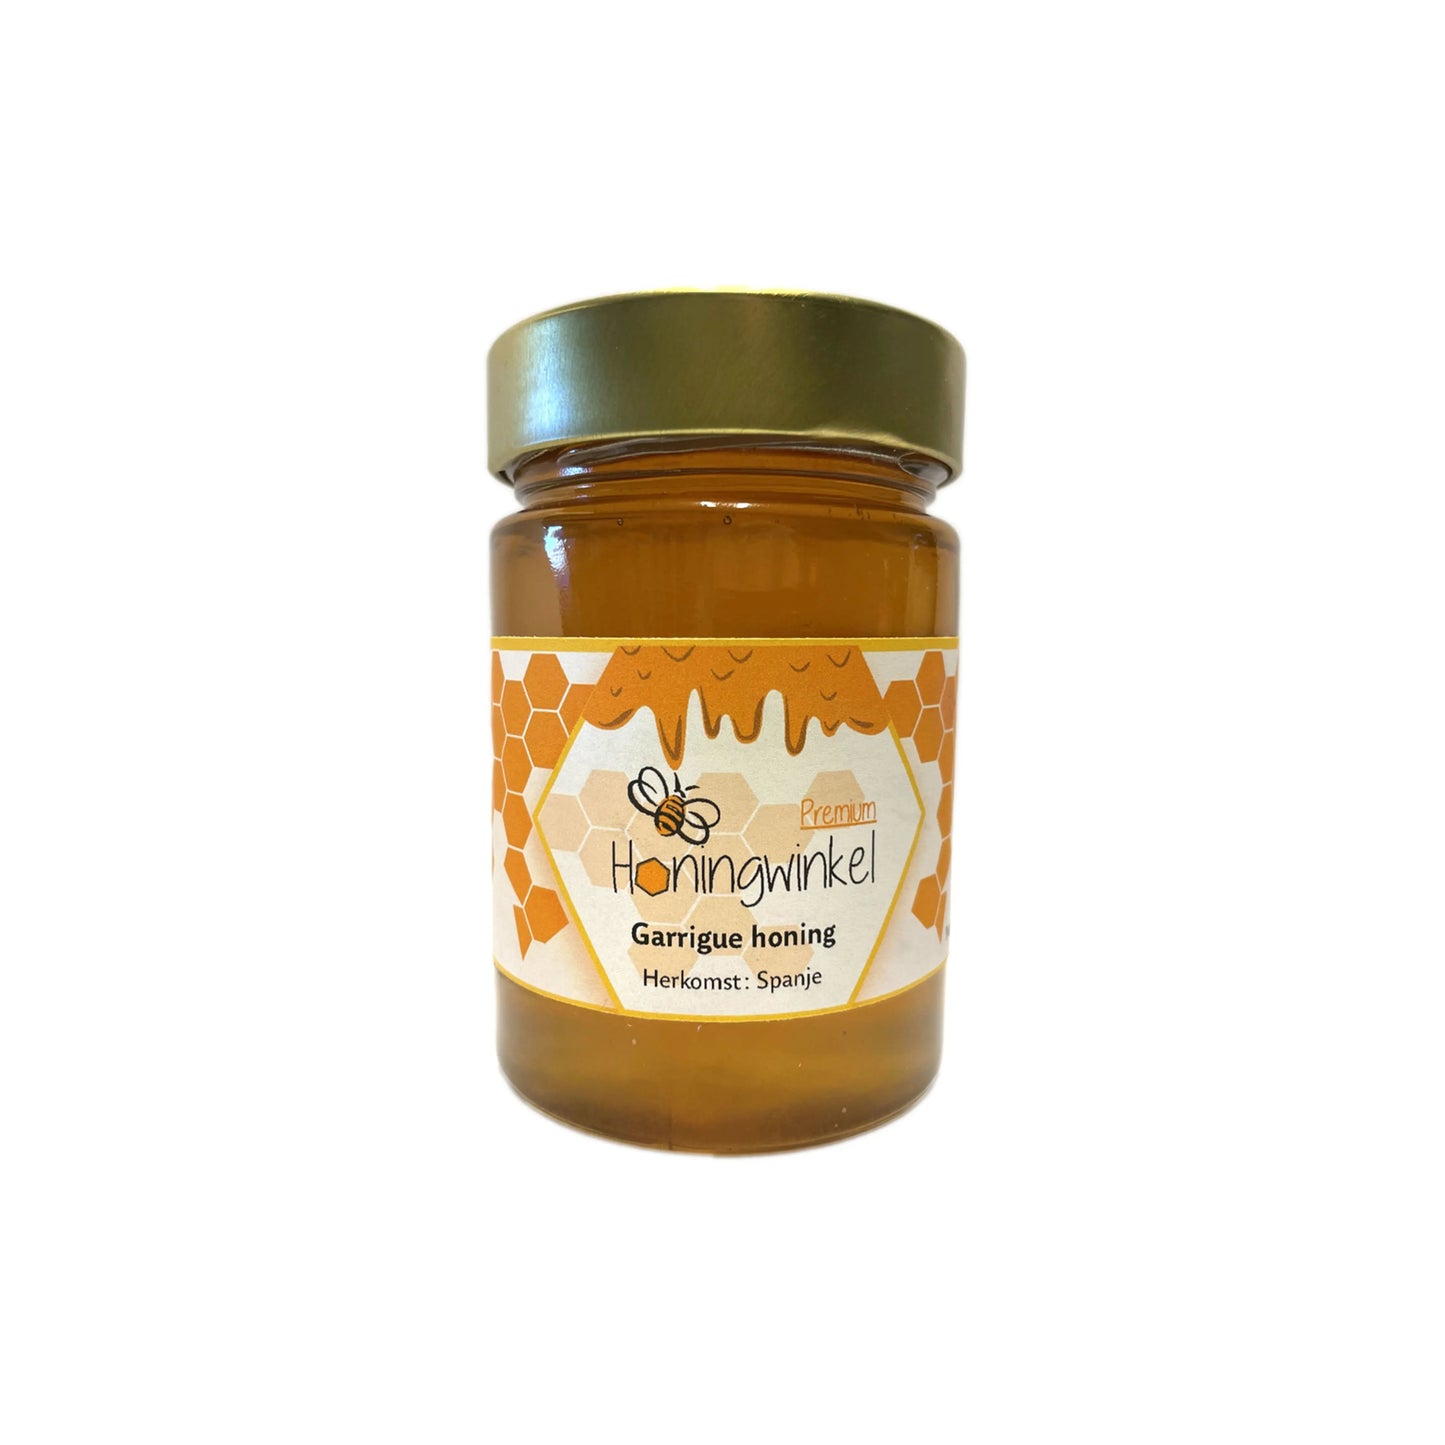 Premium garriguehoning Spanje 450g Honingwinkel (vloeibaar) - Honingwinkel